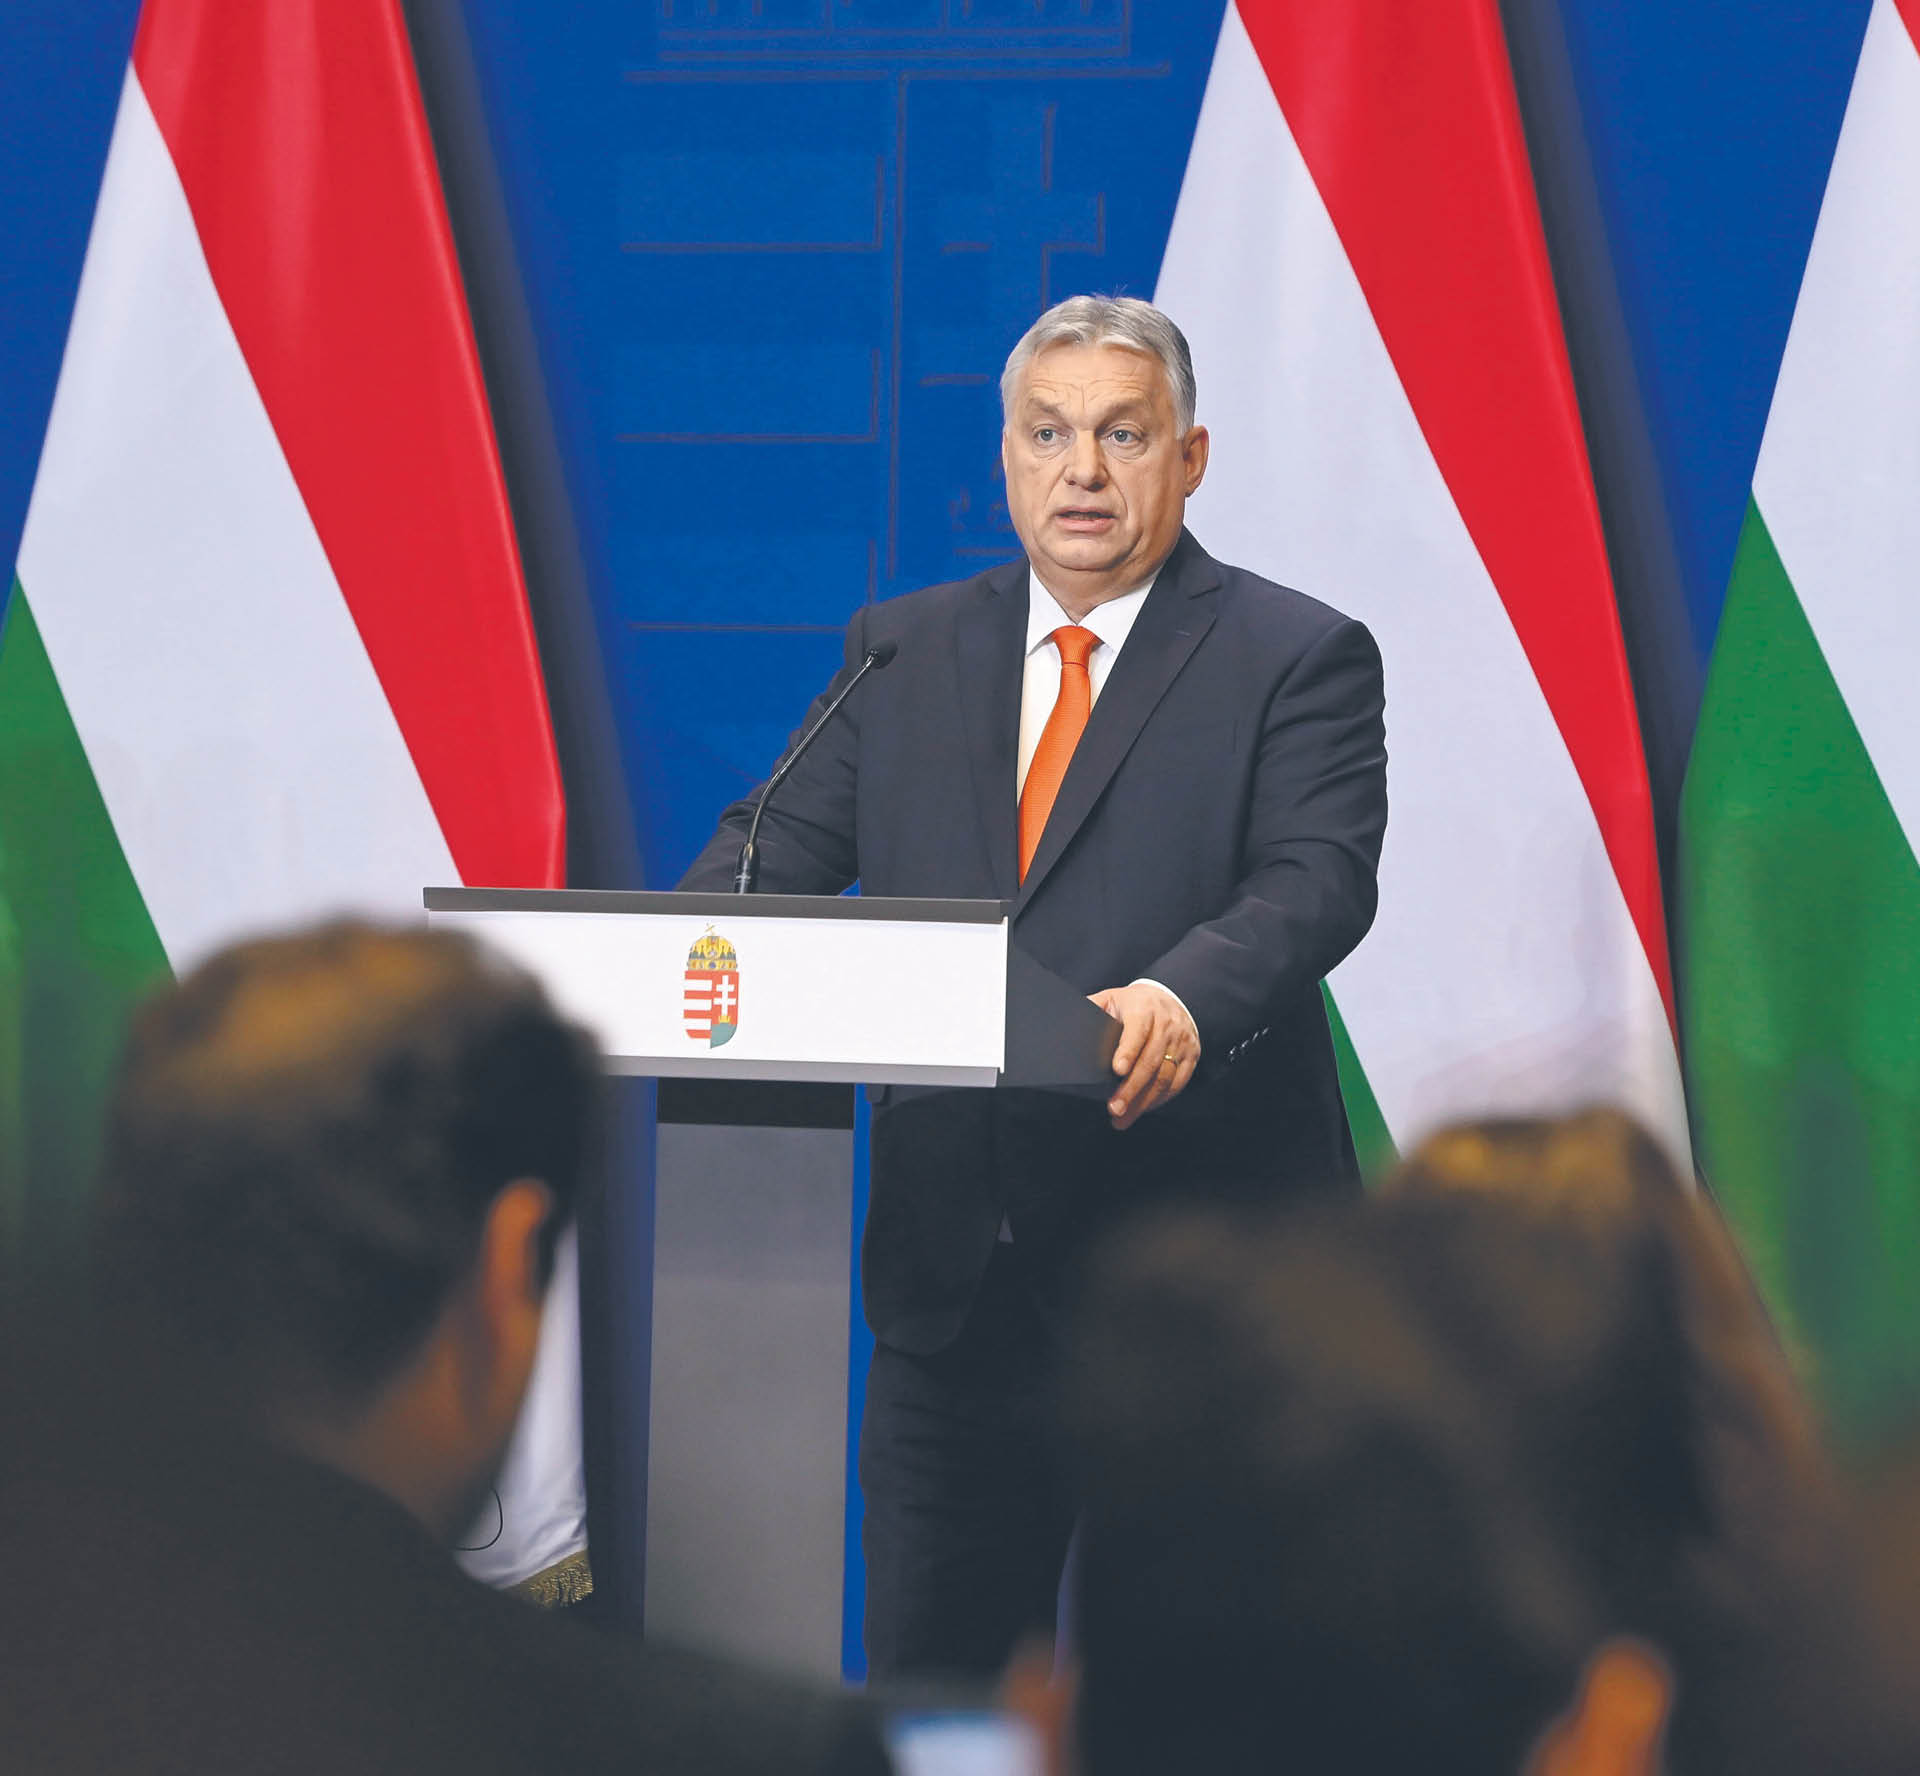 W marcu 2022 r. Sąd Najwyższy Węgier uznał, że rząd Viktora Orbána nadużywa dostępu do baz danych w prowadzonej komunikacji